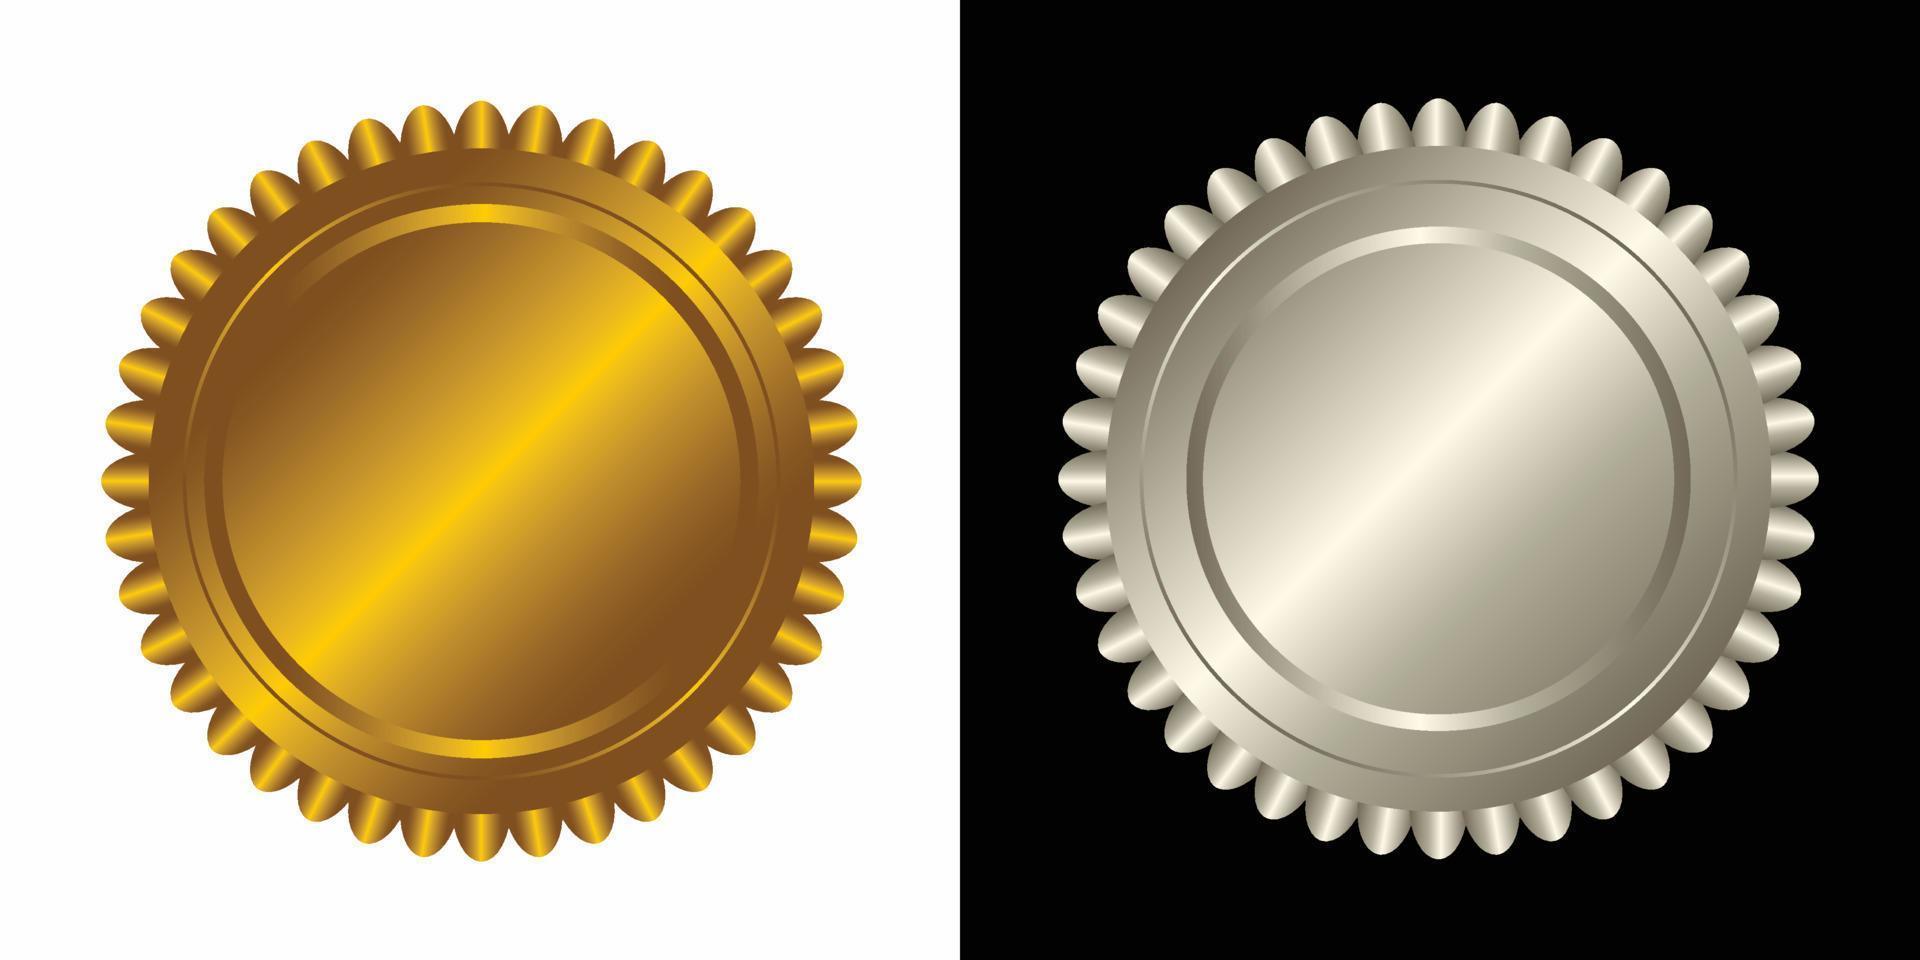 conjunto vector redondo dorado y plata Insignia aislado, sello sello oro lujo elegante bandera icono, vector ilustración certificado plata frustrar sello o medalla aislado.